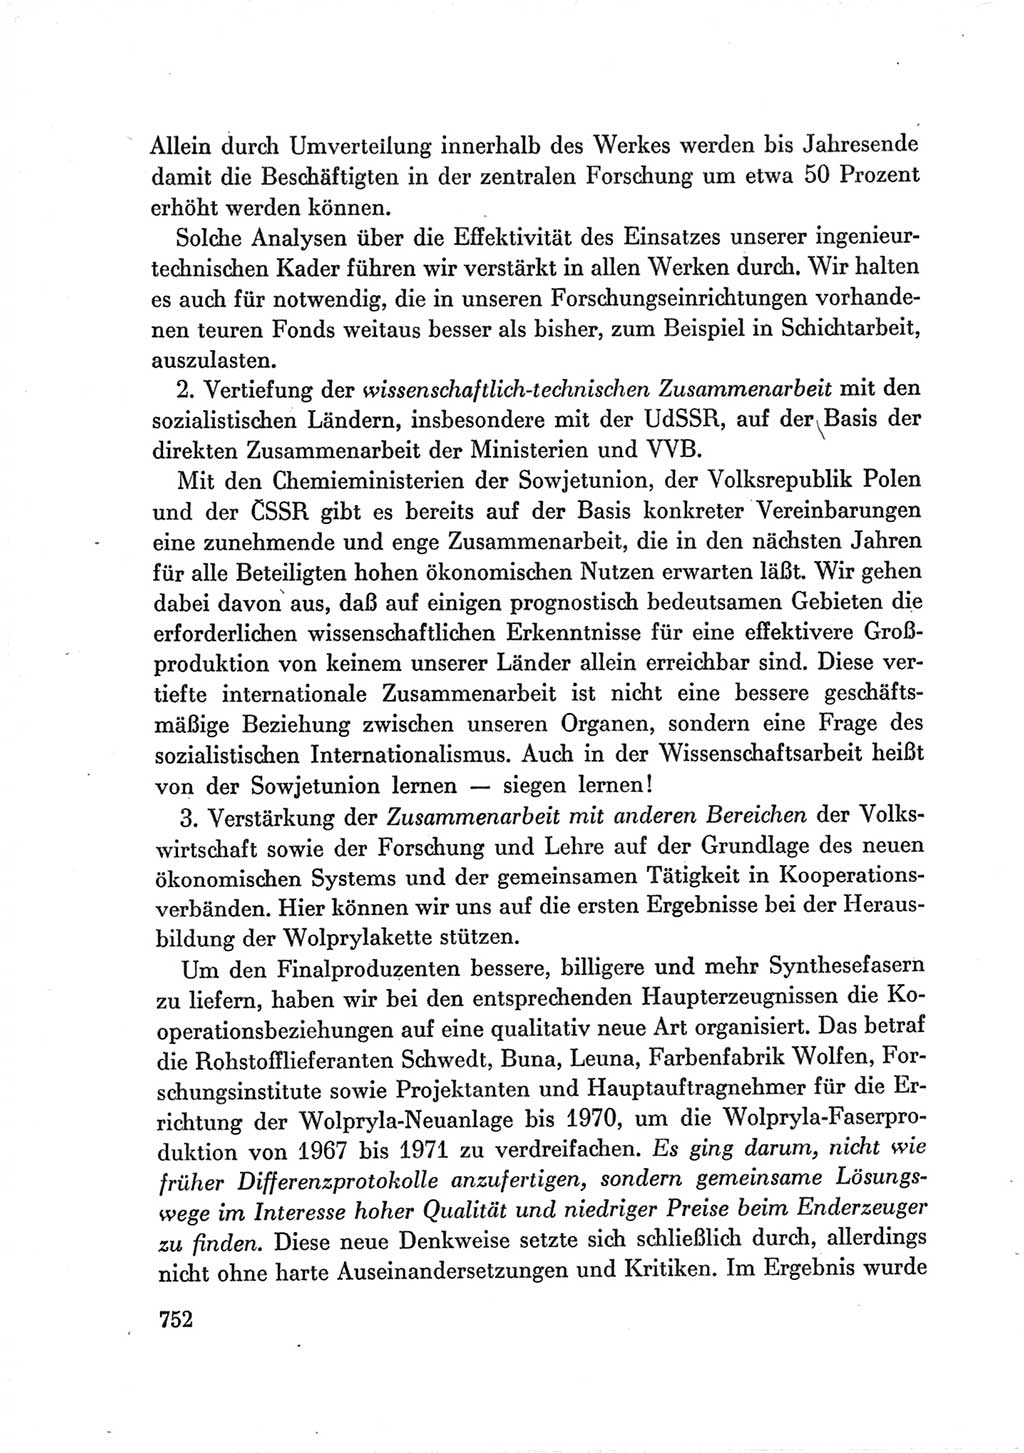 Protokoll der Verhandlungen des Ⅶ. Parteitages der Sozialistischen Einheitspartei Deutschlands (SED) [Deutsche Demokratische Republik (DDR)] 1967, Band Ⅲ, Seite 752 (Prot. Verh. Ⅶ. PT SED DDR 1967, Bd. Ⅲ, S. 752)